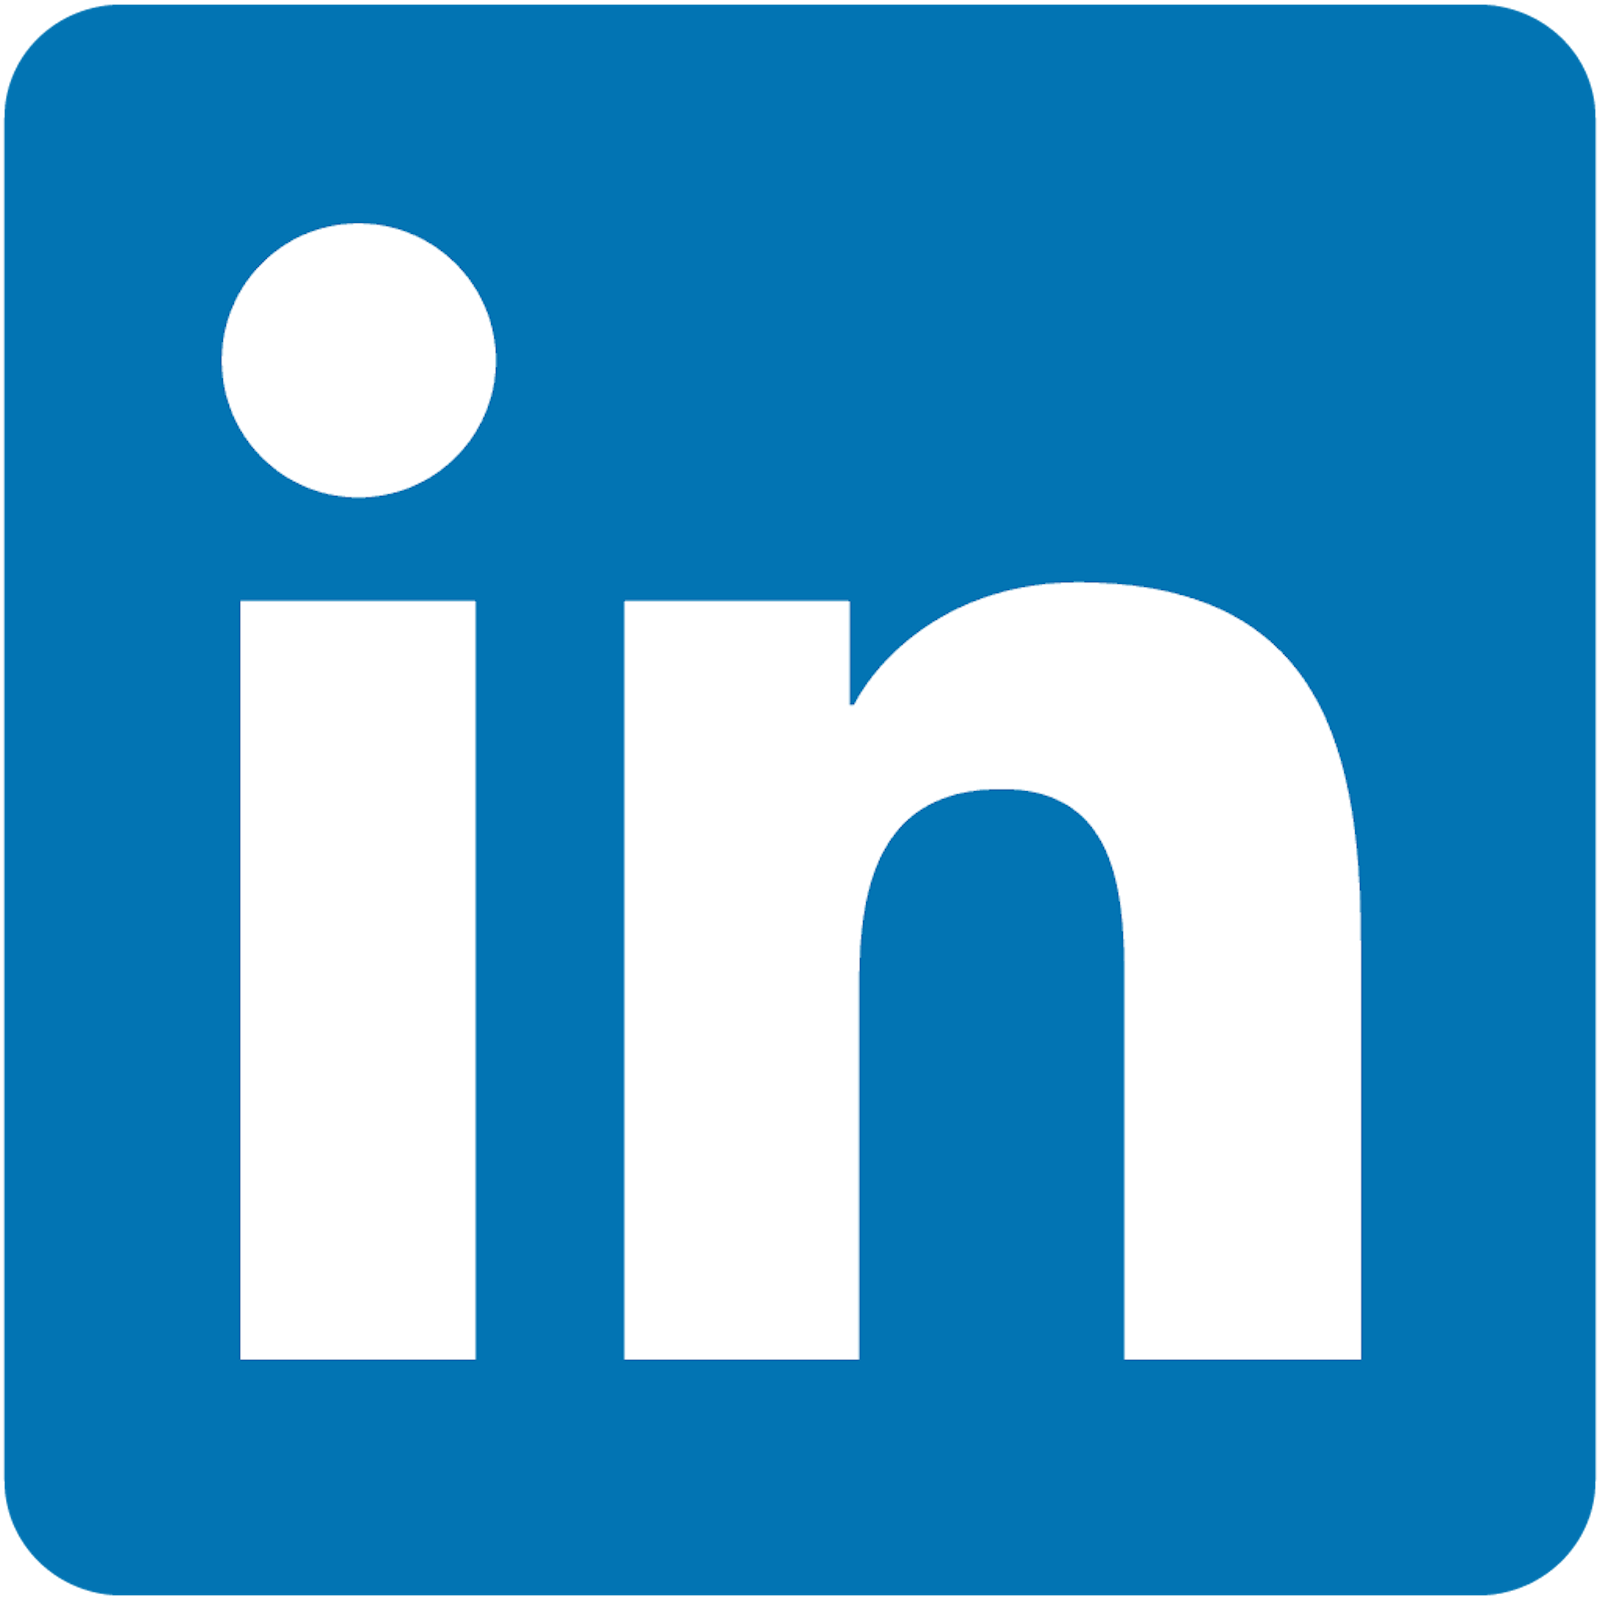 Follow Valence Community on LinkedIn →